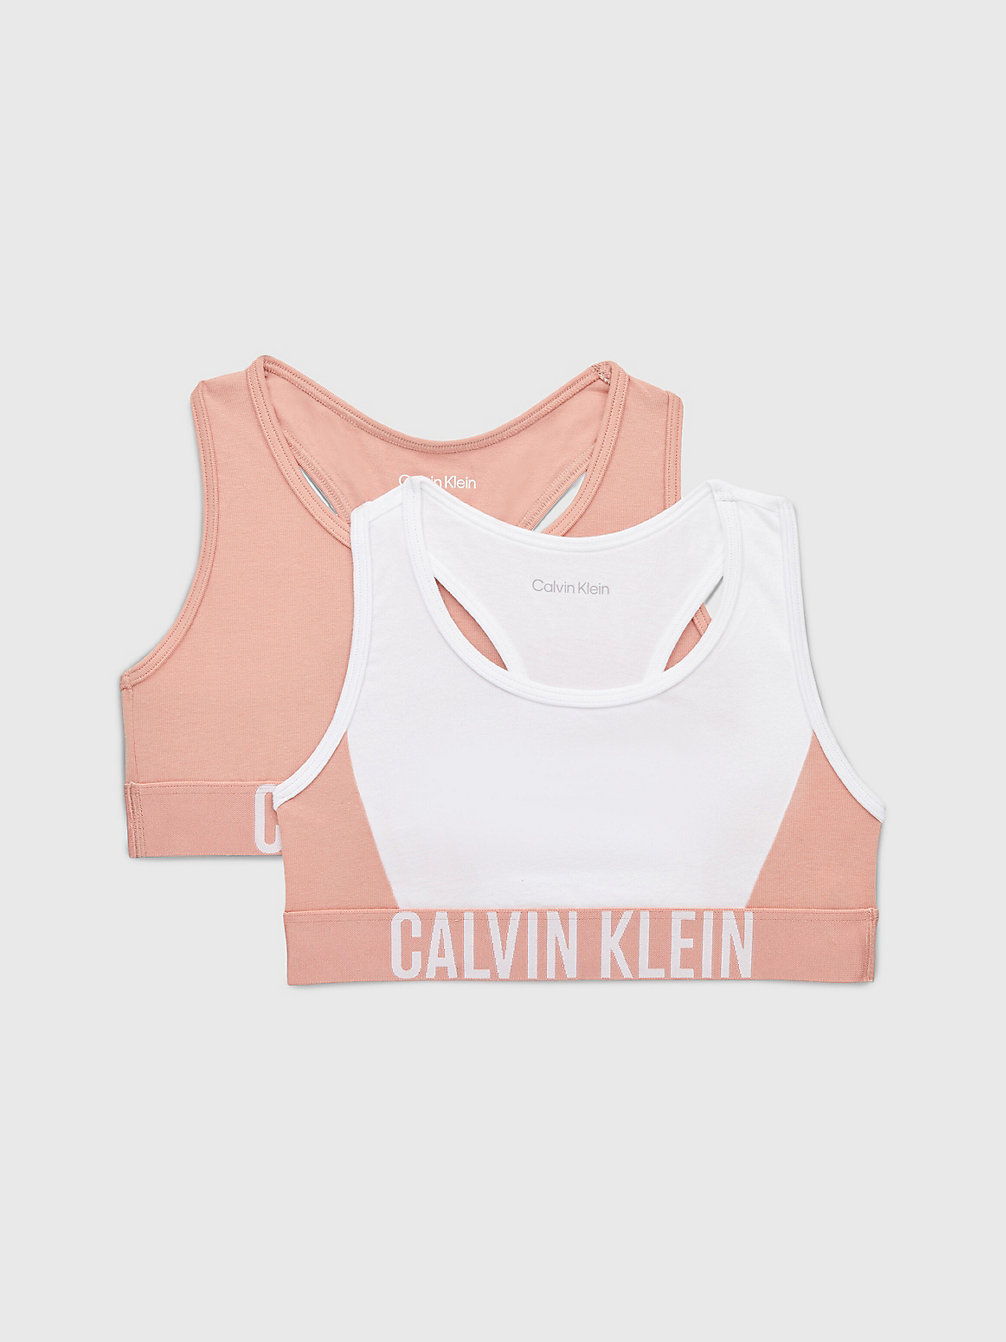 PINKMOCHA/PVHWHITE 2er-Pack Bralettes Für Mädchen – Intense Power undefined Maedchen Calvin Klein